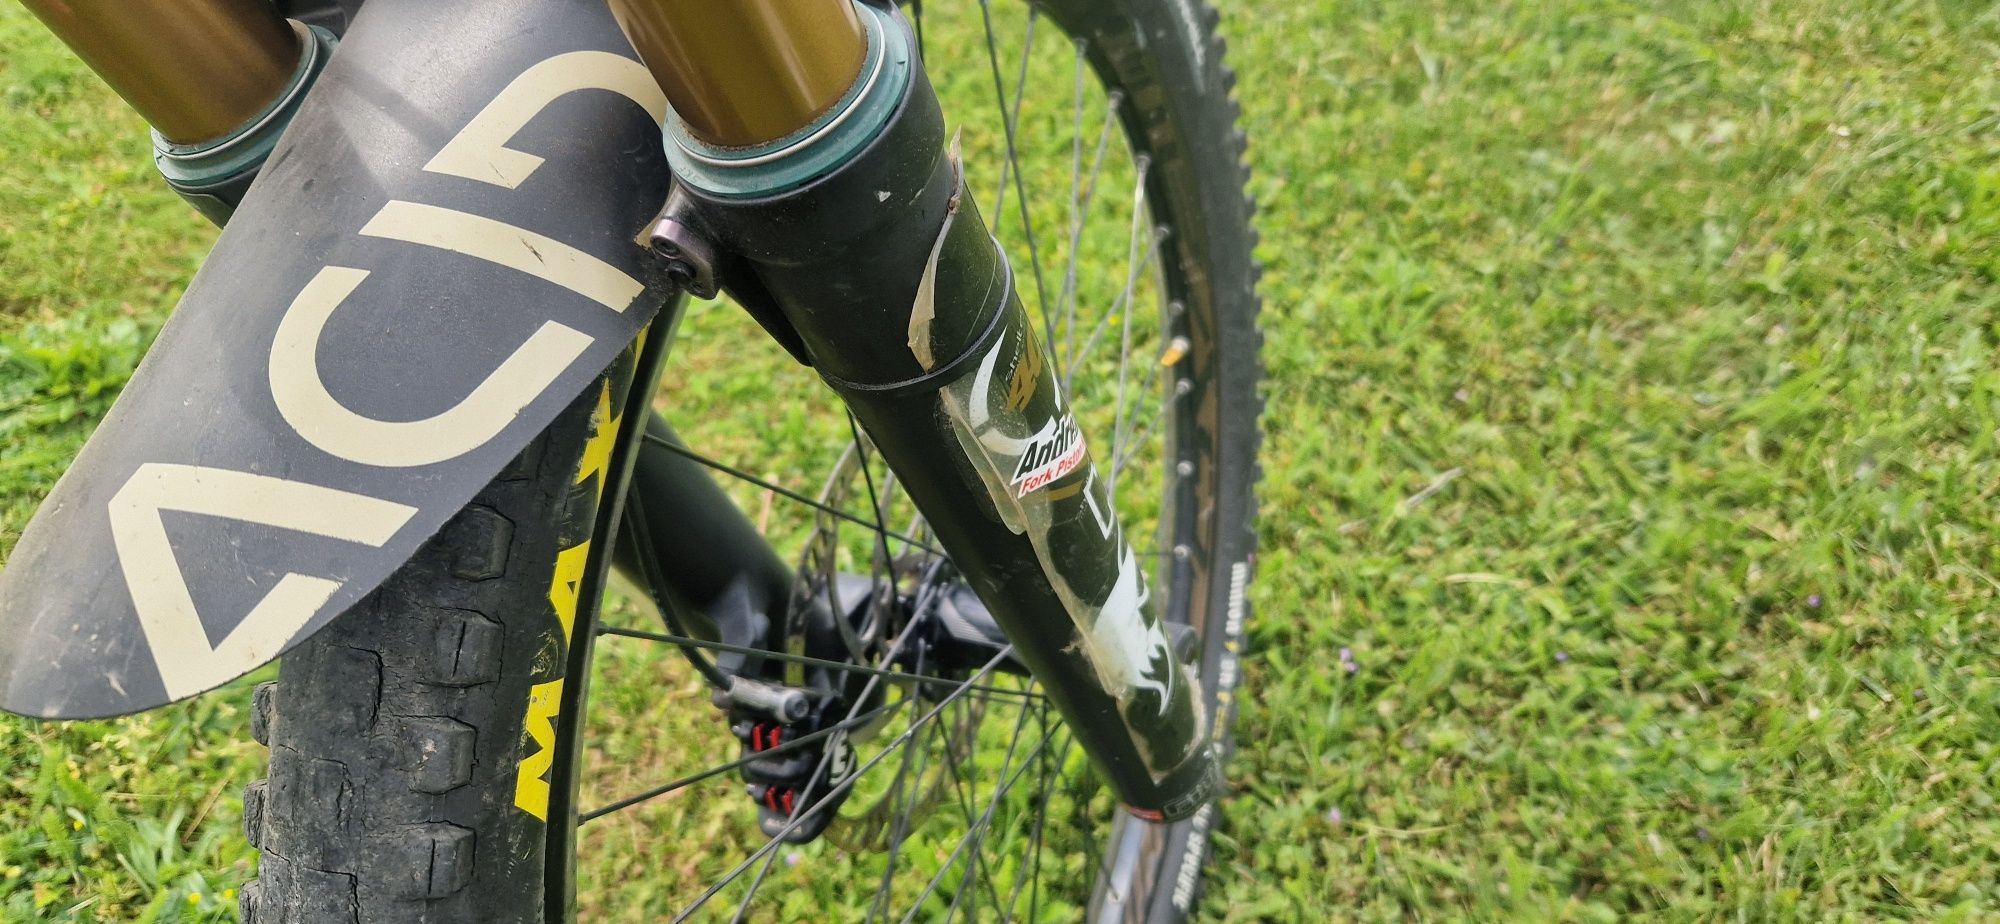 Bicicleta Specilized demo 8 2014